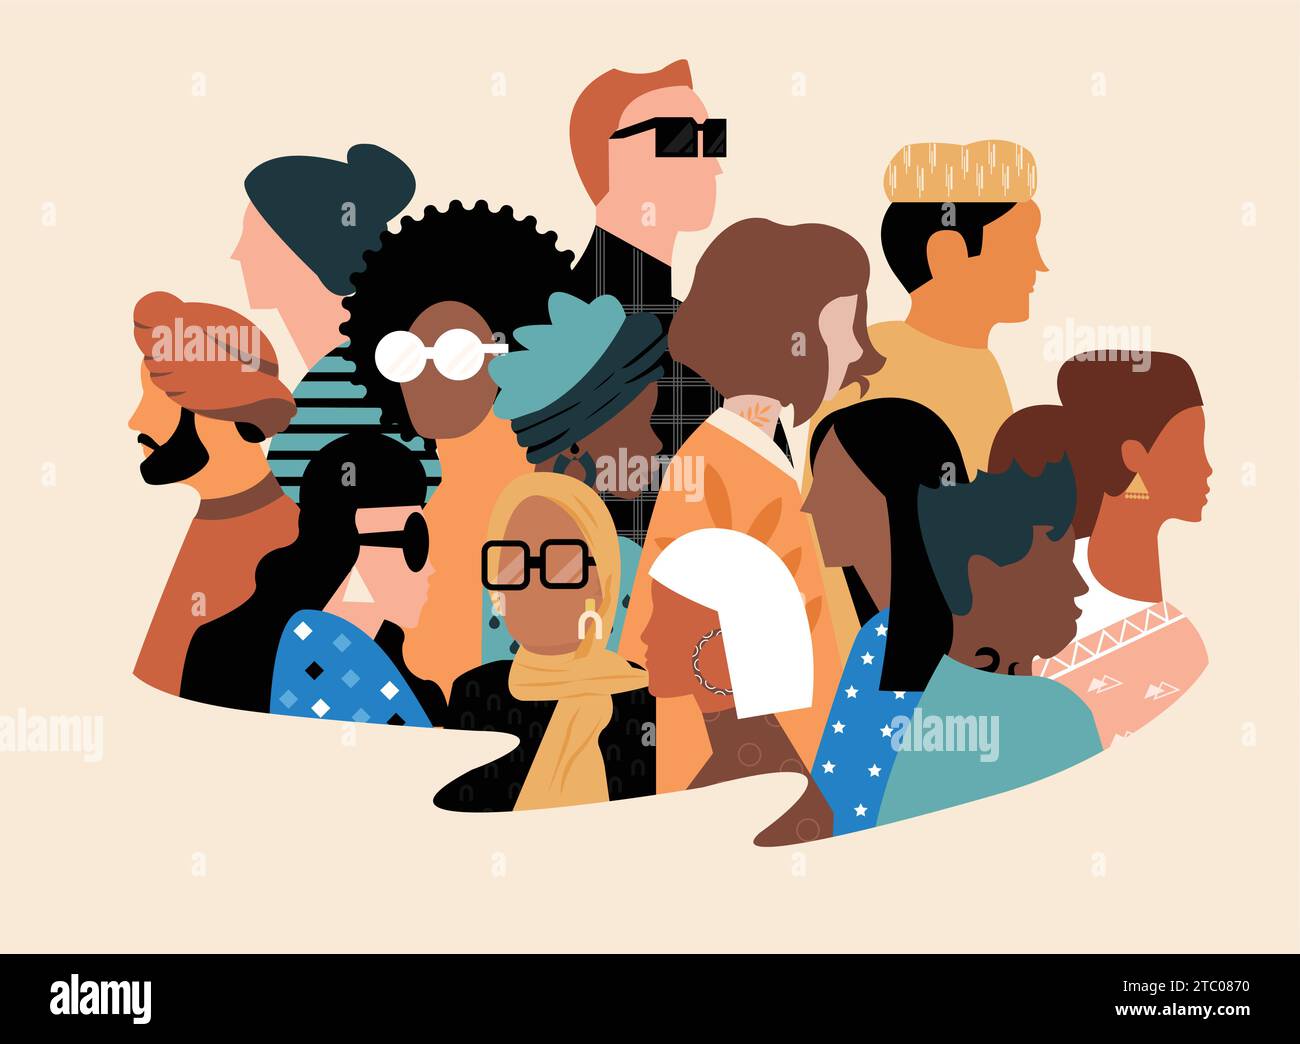 Flache Illustration über Vielfalt, Einbeziehung und Zusammengehörigkeit ohne Barrieren Stock Vektor